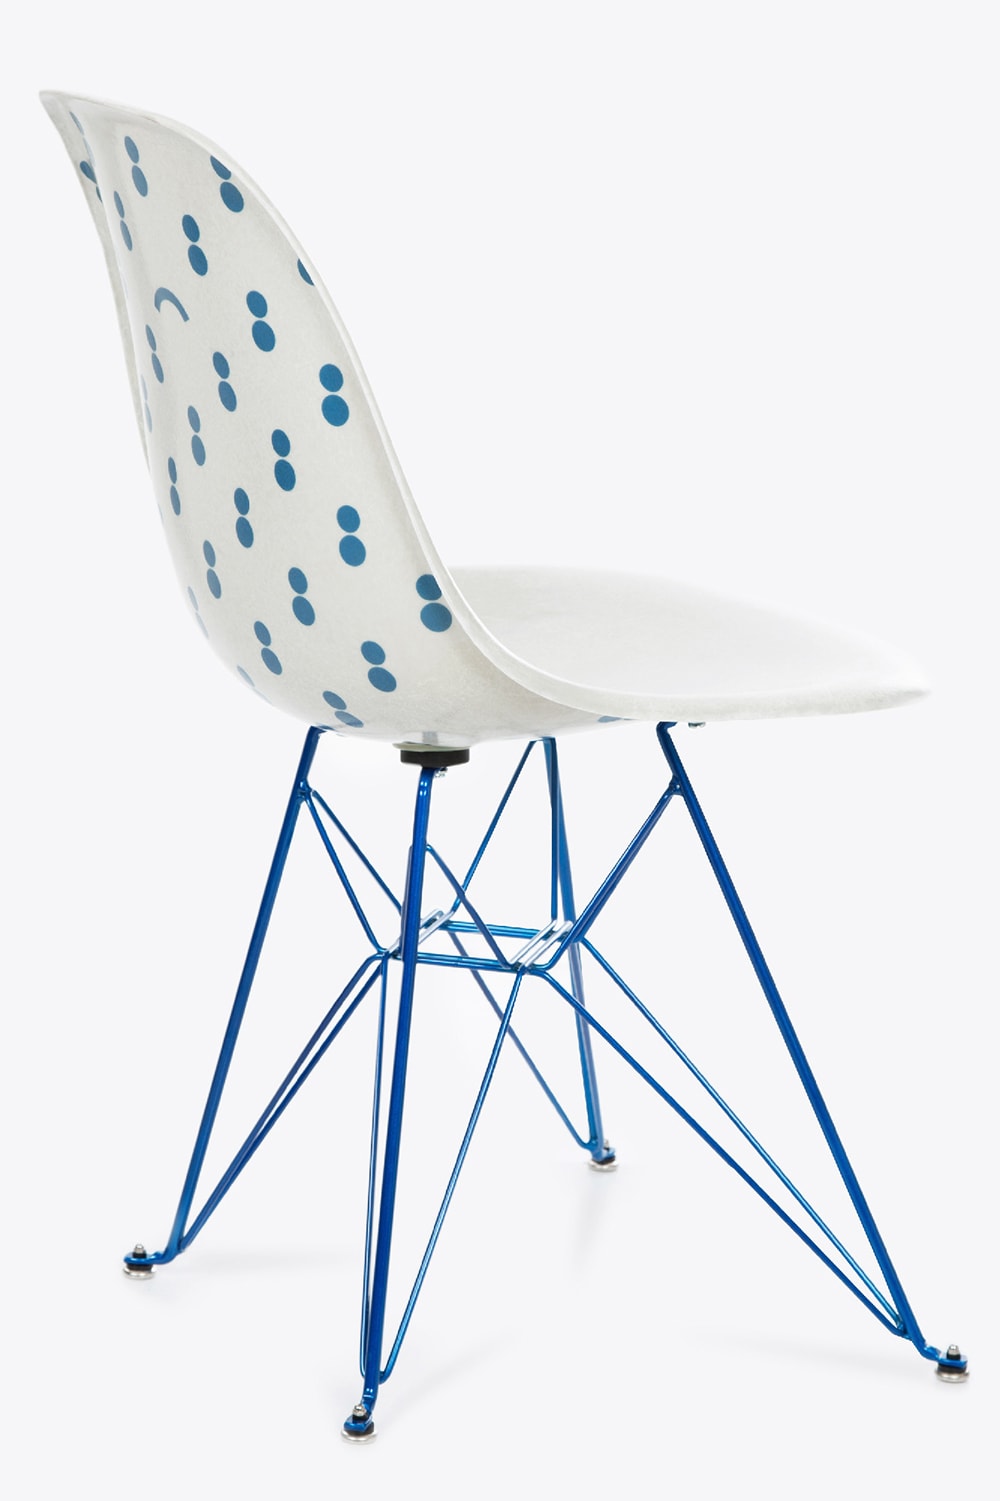 Chaise Modernica colette Blackrainbow base Eiffel fibre de ver blanc bleu